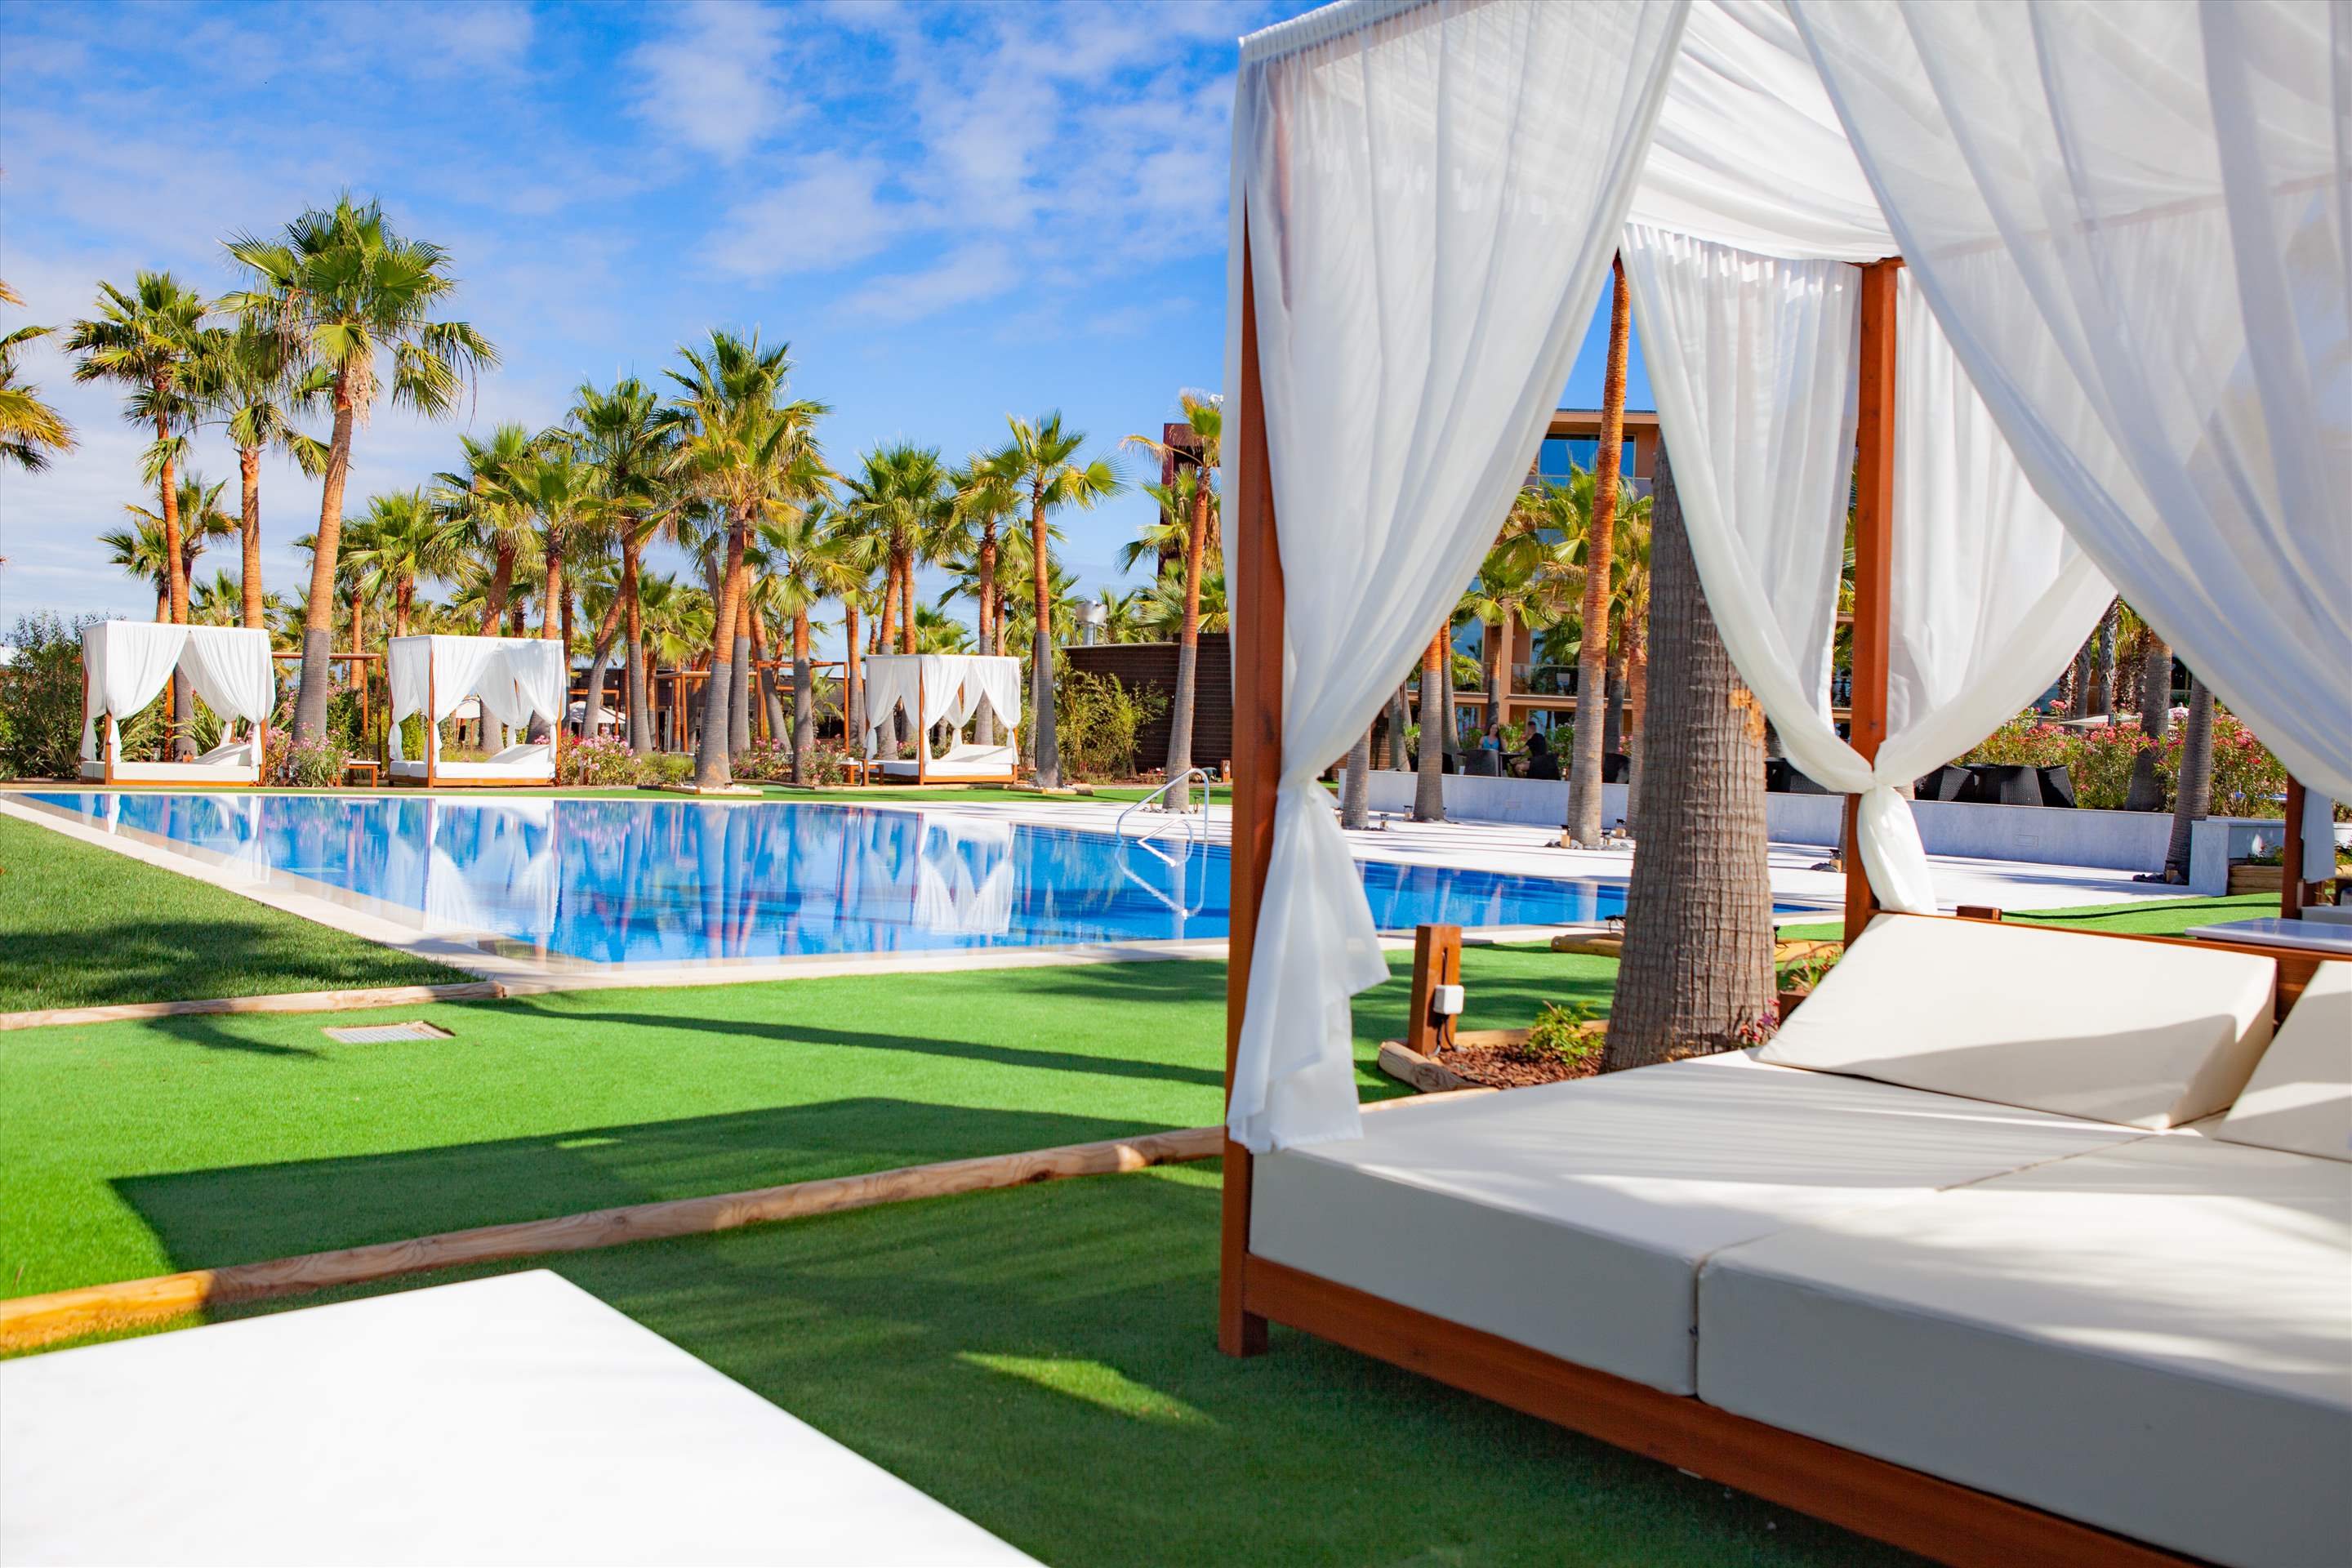 Vidamar Hotel Superior Ocean View Room, HB, Double Room, 1 bedroom hotel in Vidamar Resort, Algarve Photo #48